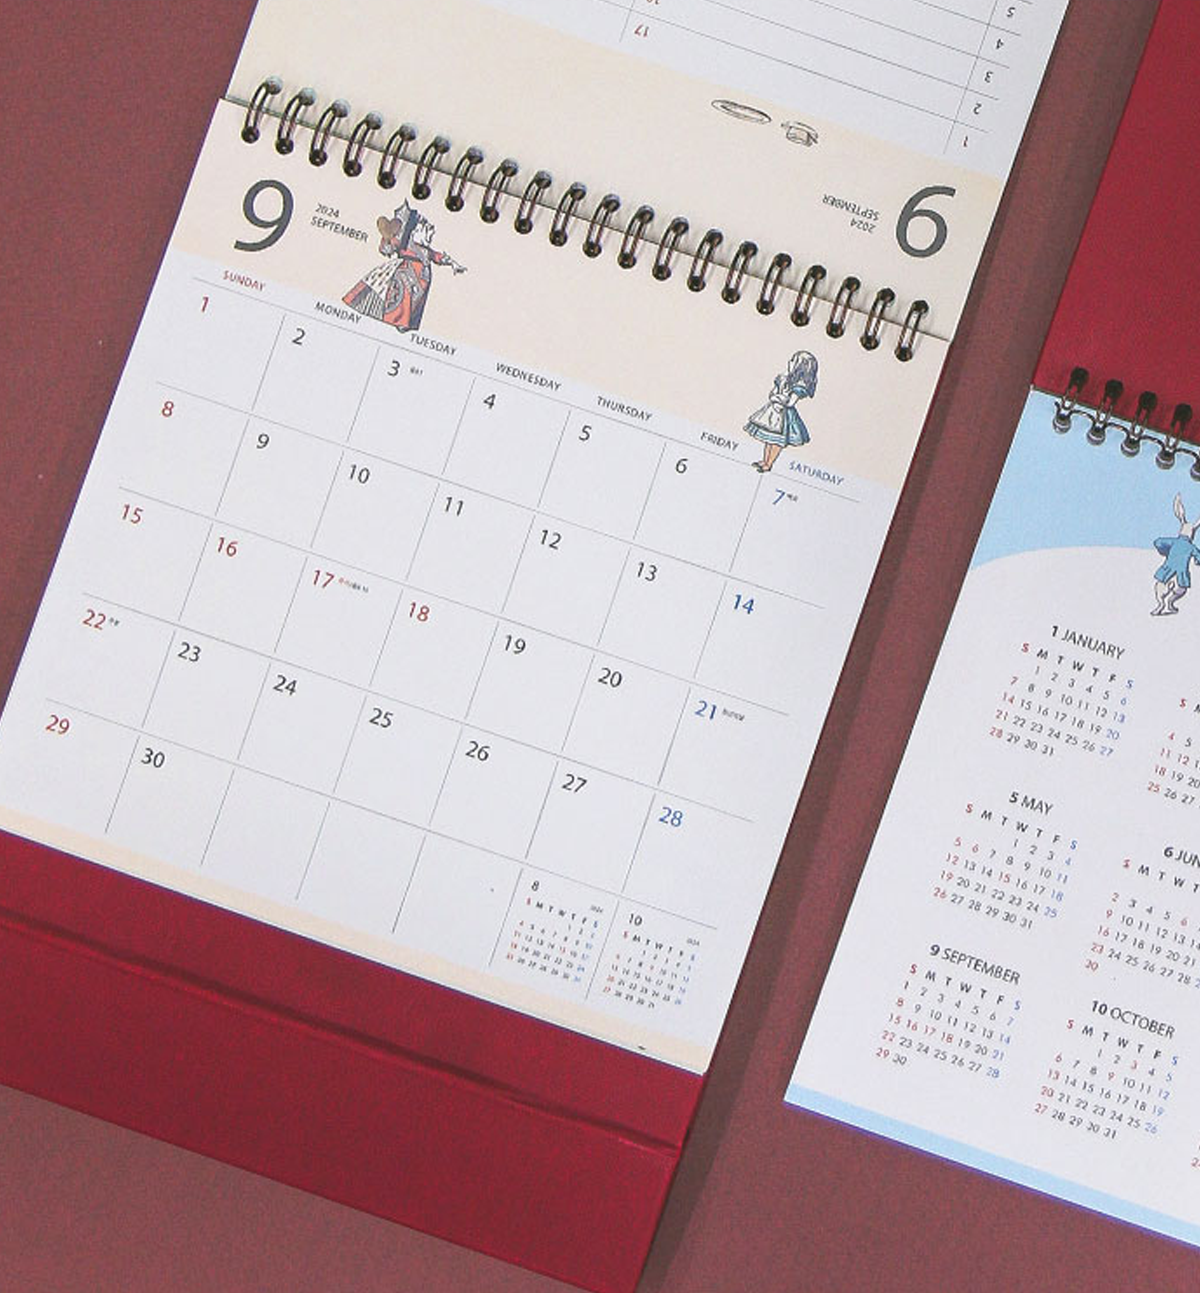 2024 Alice In Wonderland Desk Calendar